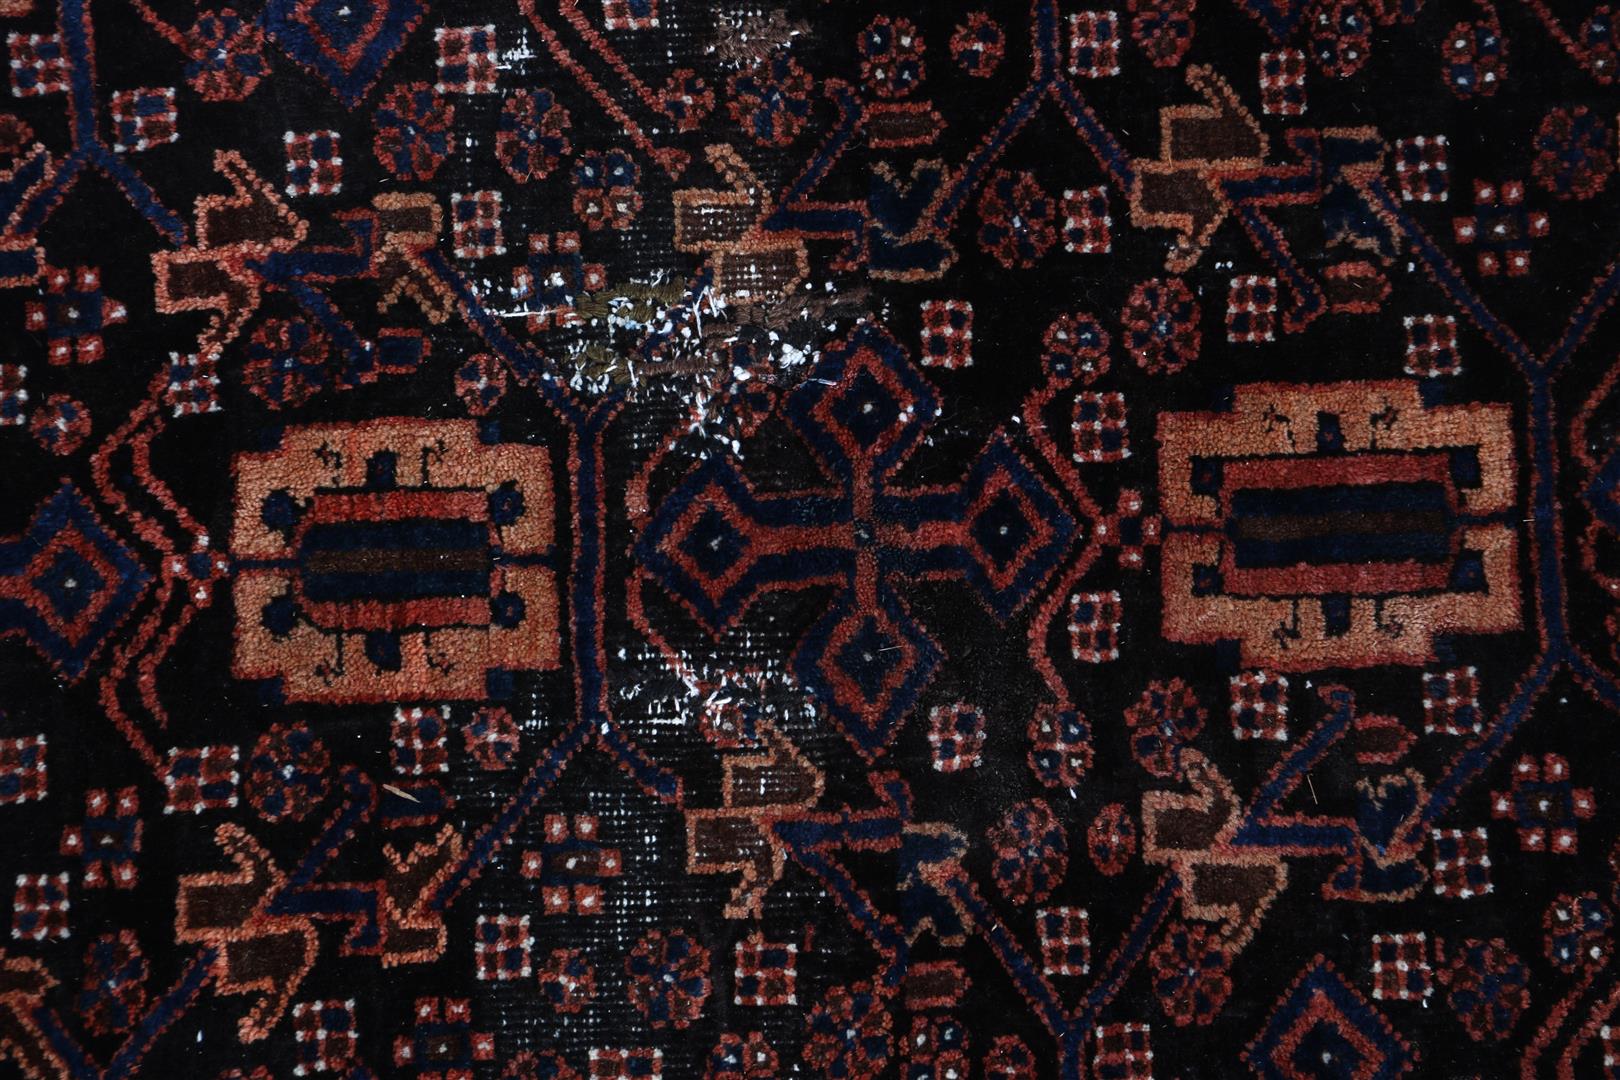 Hand-knotted oriental carpet - Bild 2 aus 4